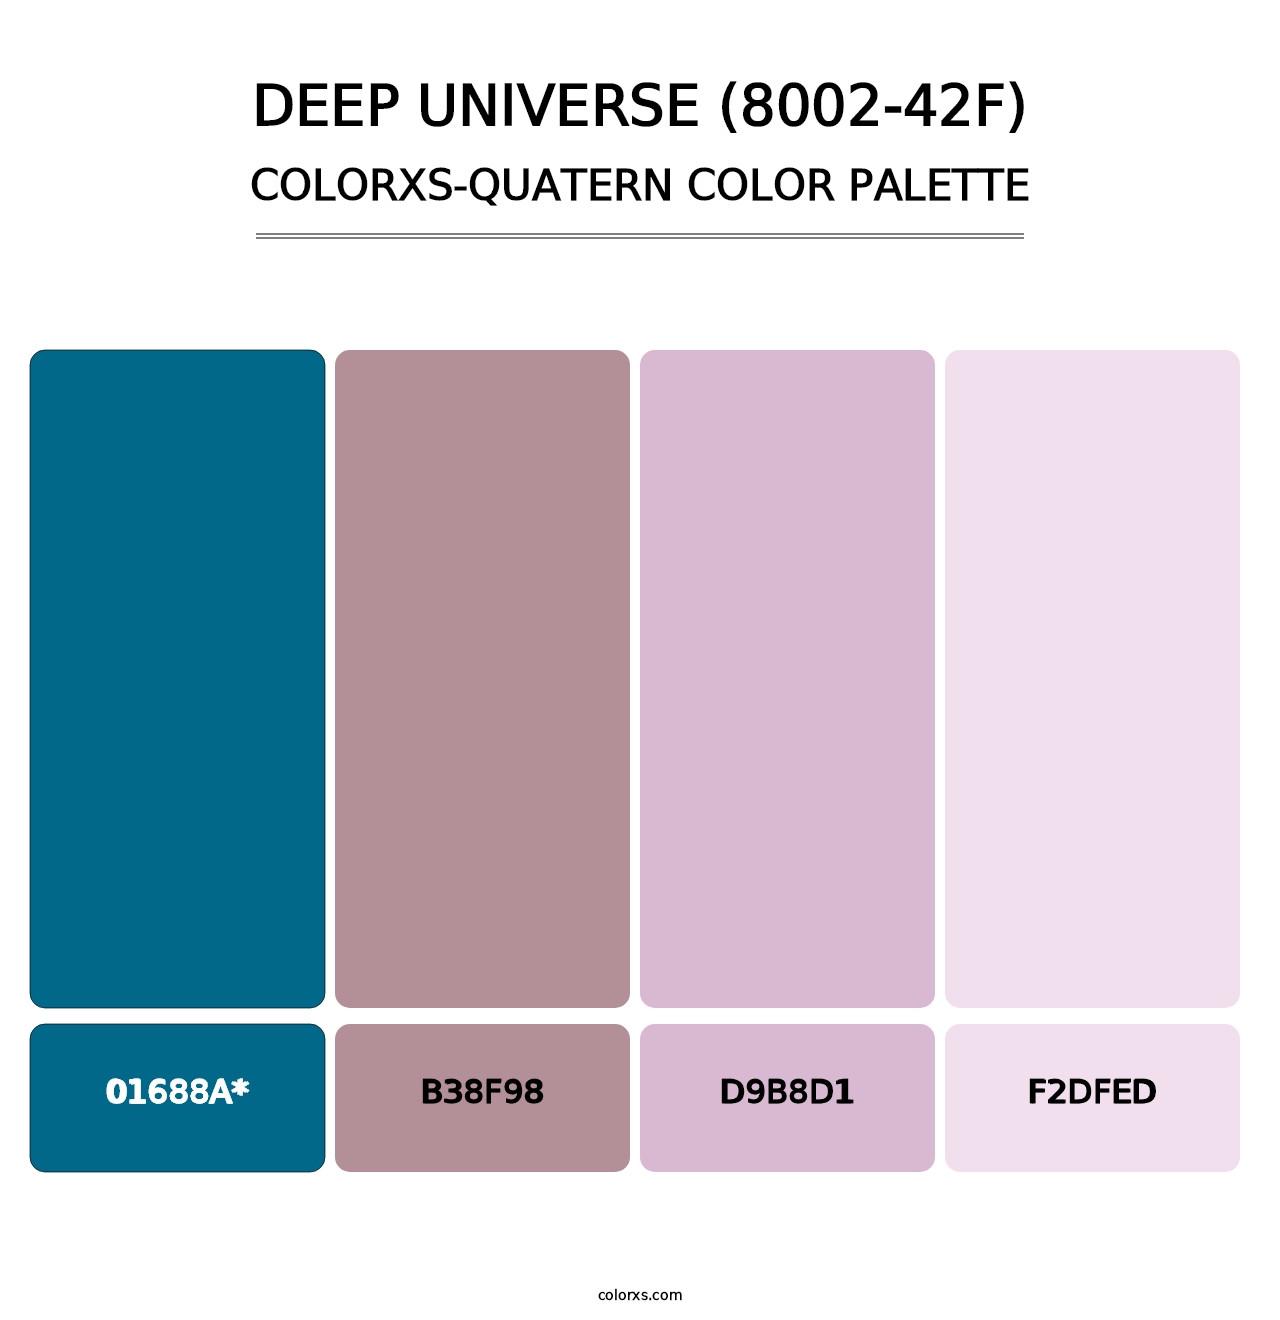 Deep Universe (8002-42F) - Colorxs Quatern Palette